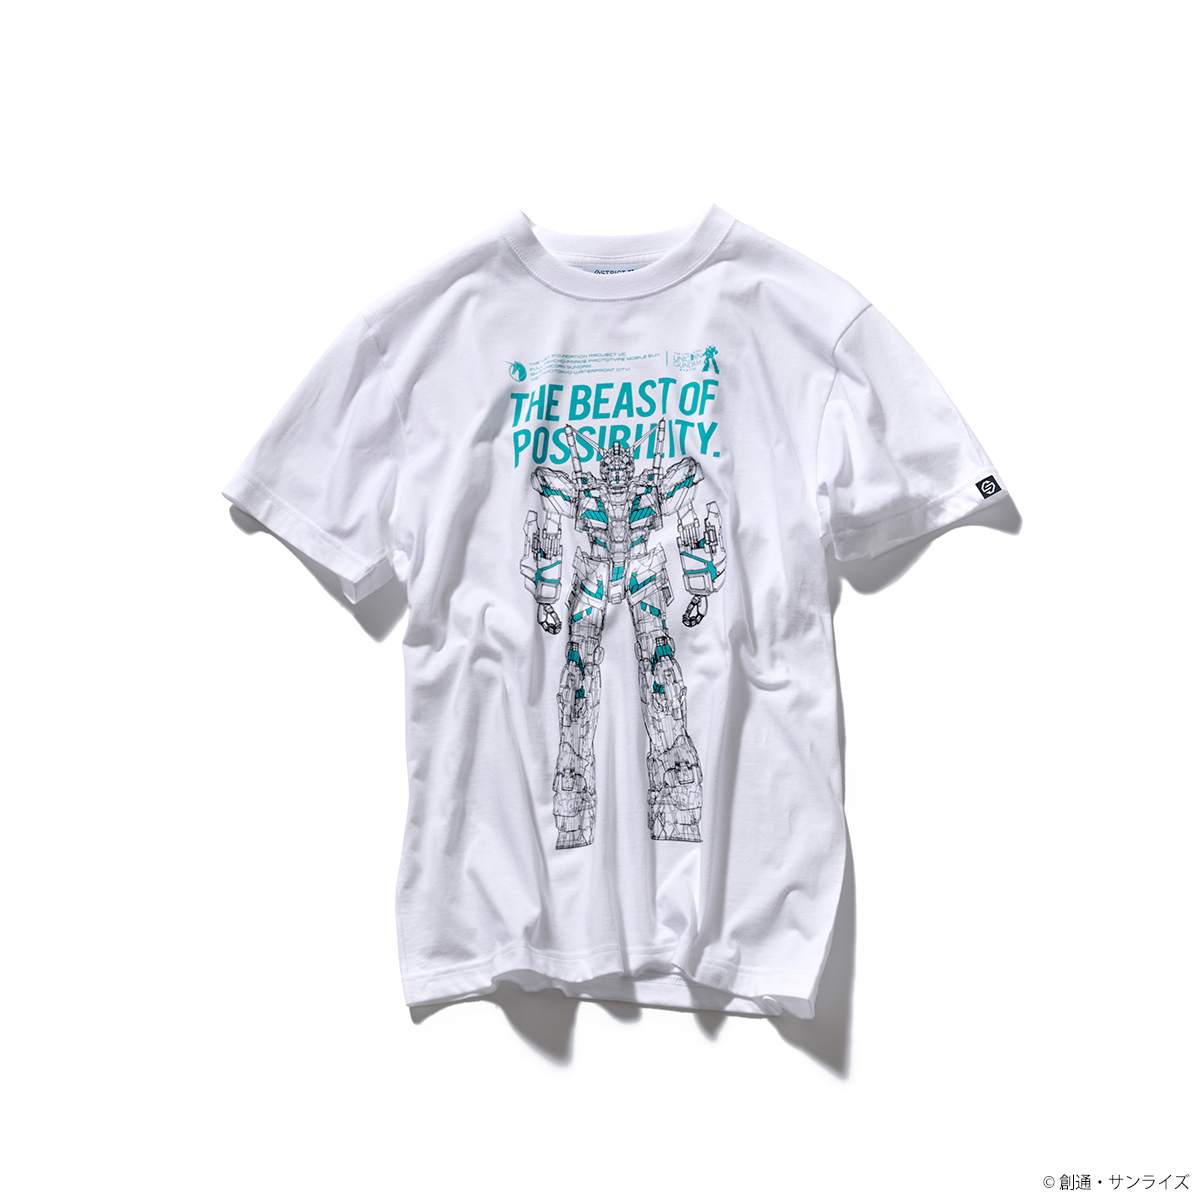 『実物大ユニコーンガンダム立像』Tシャツ 透視図柄 グリーンフレーム